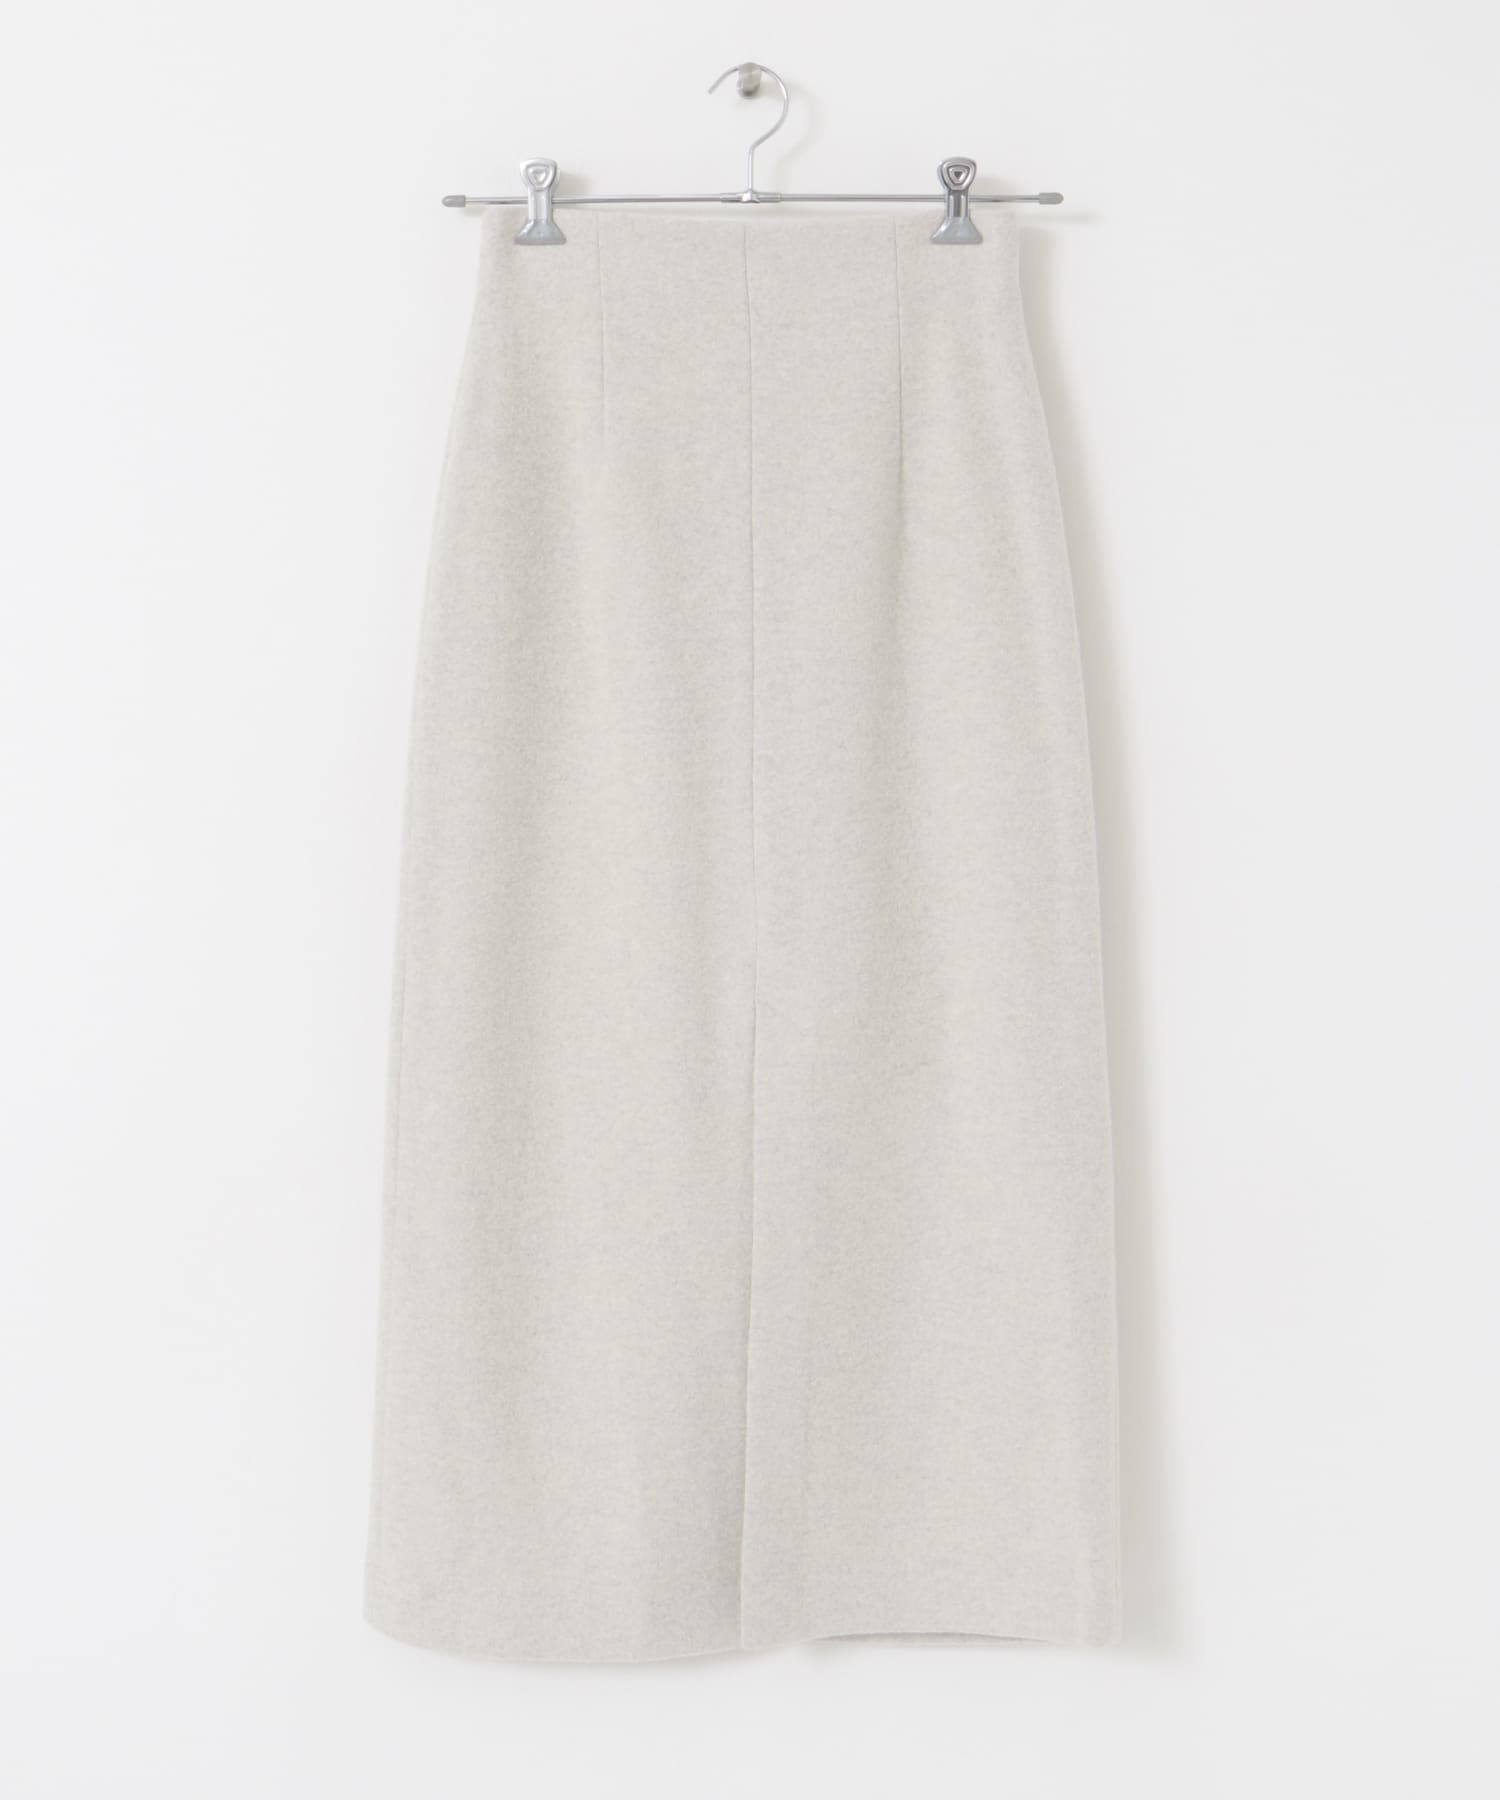 日本製羊毛開衩窄裙(米色-36-OFF WHITE)